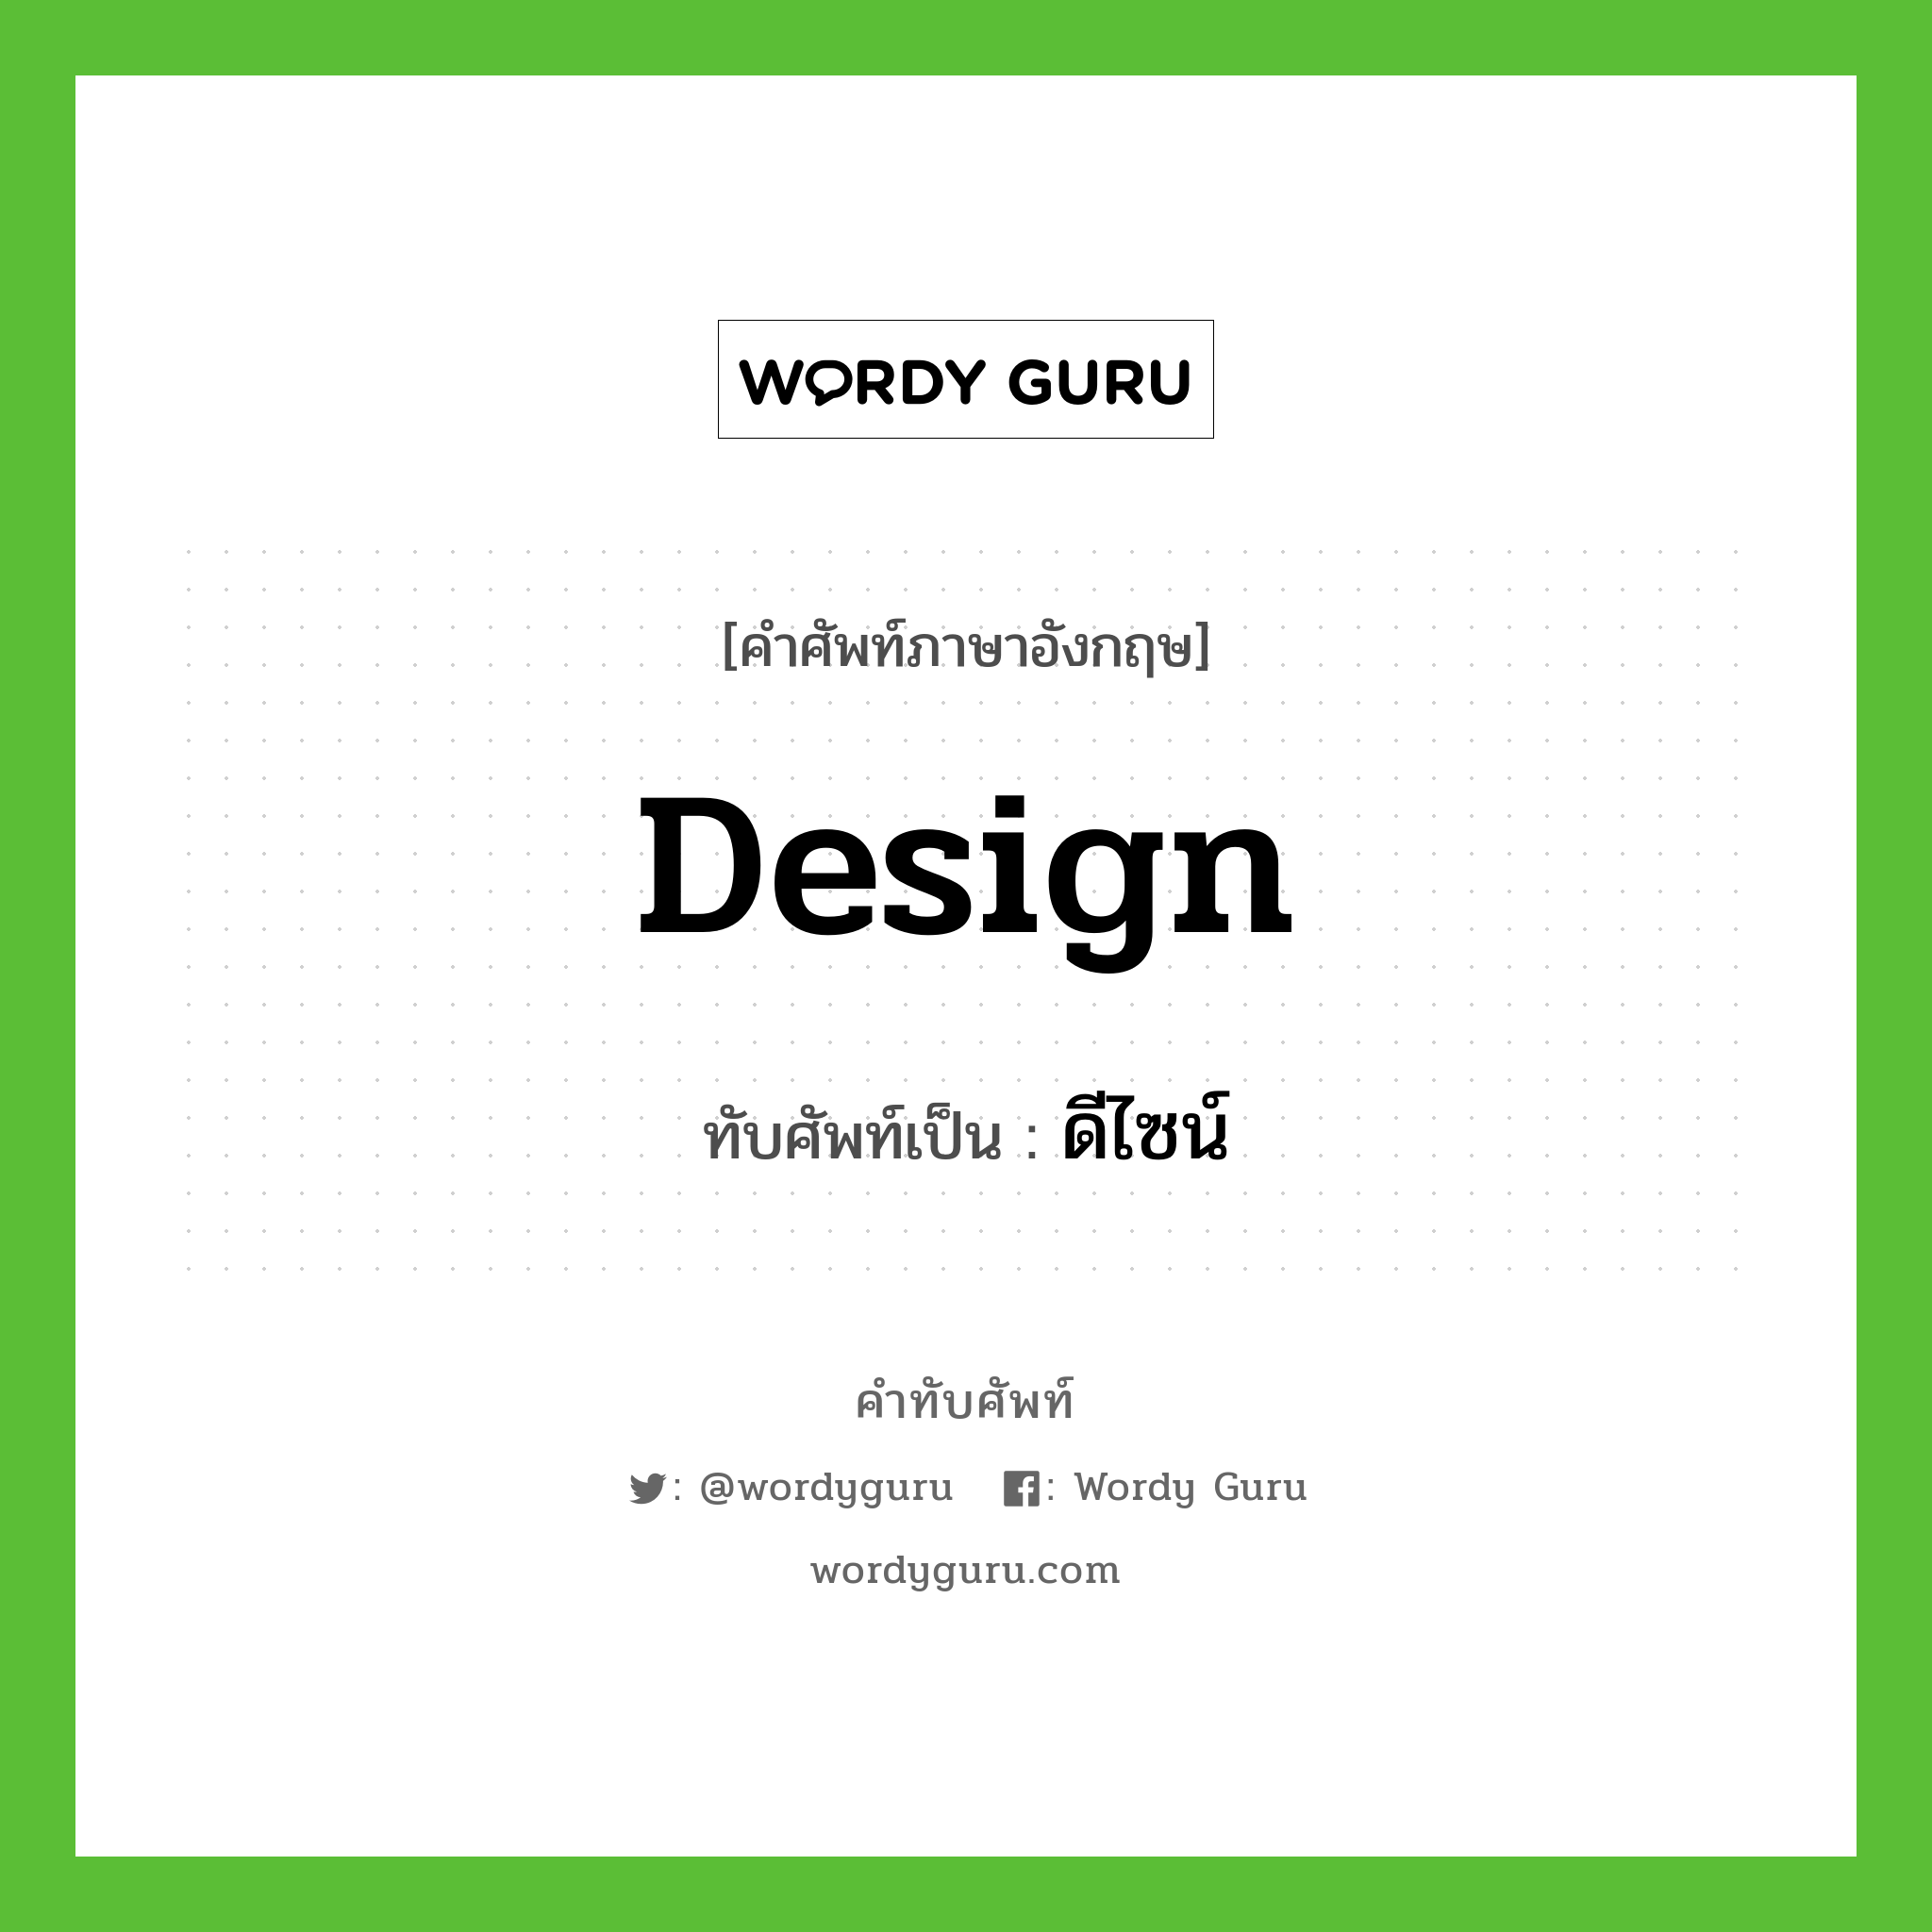 design เขียนเป็นคำไทยว่าอะไร?, คำศัพท์ภาษาอังกฤษ design ทับศัพท์เป็น ดีไซน์